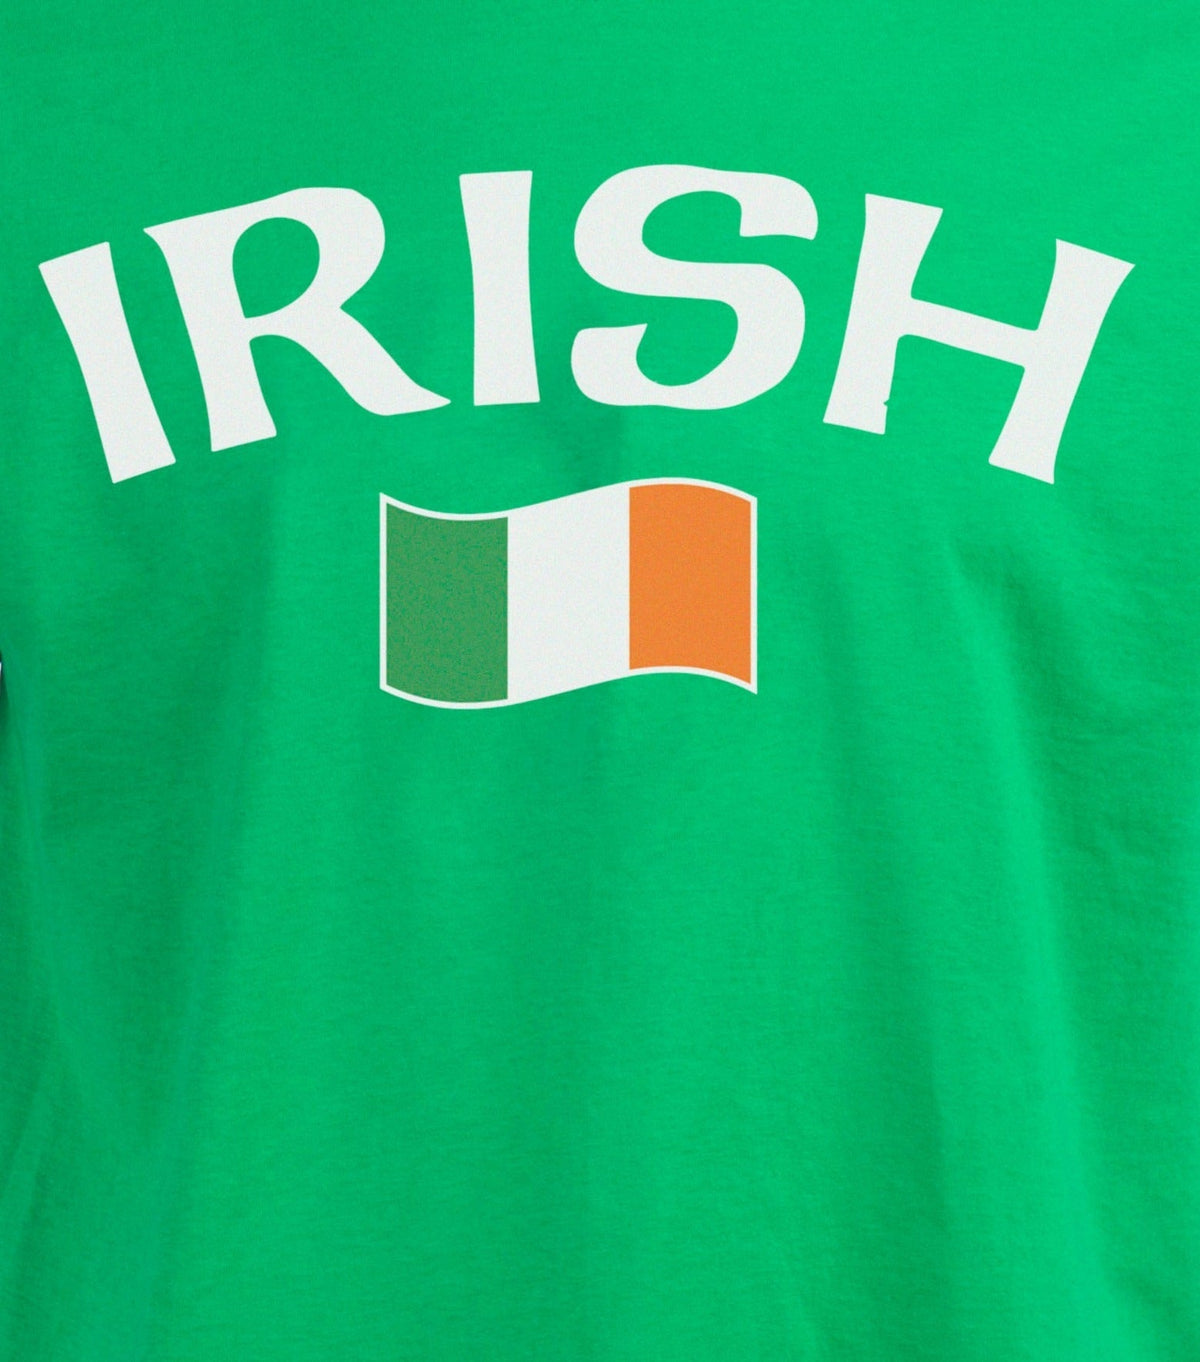 Irish Pride - Irish Flag - Ireland Love St. Patrick's Day T-shirt - Women's